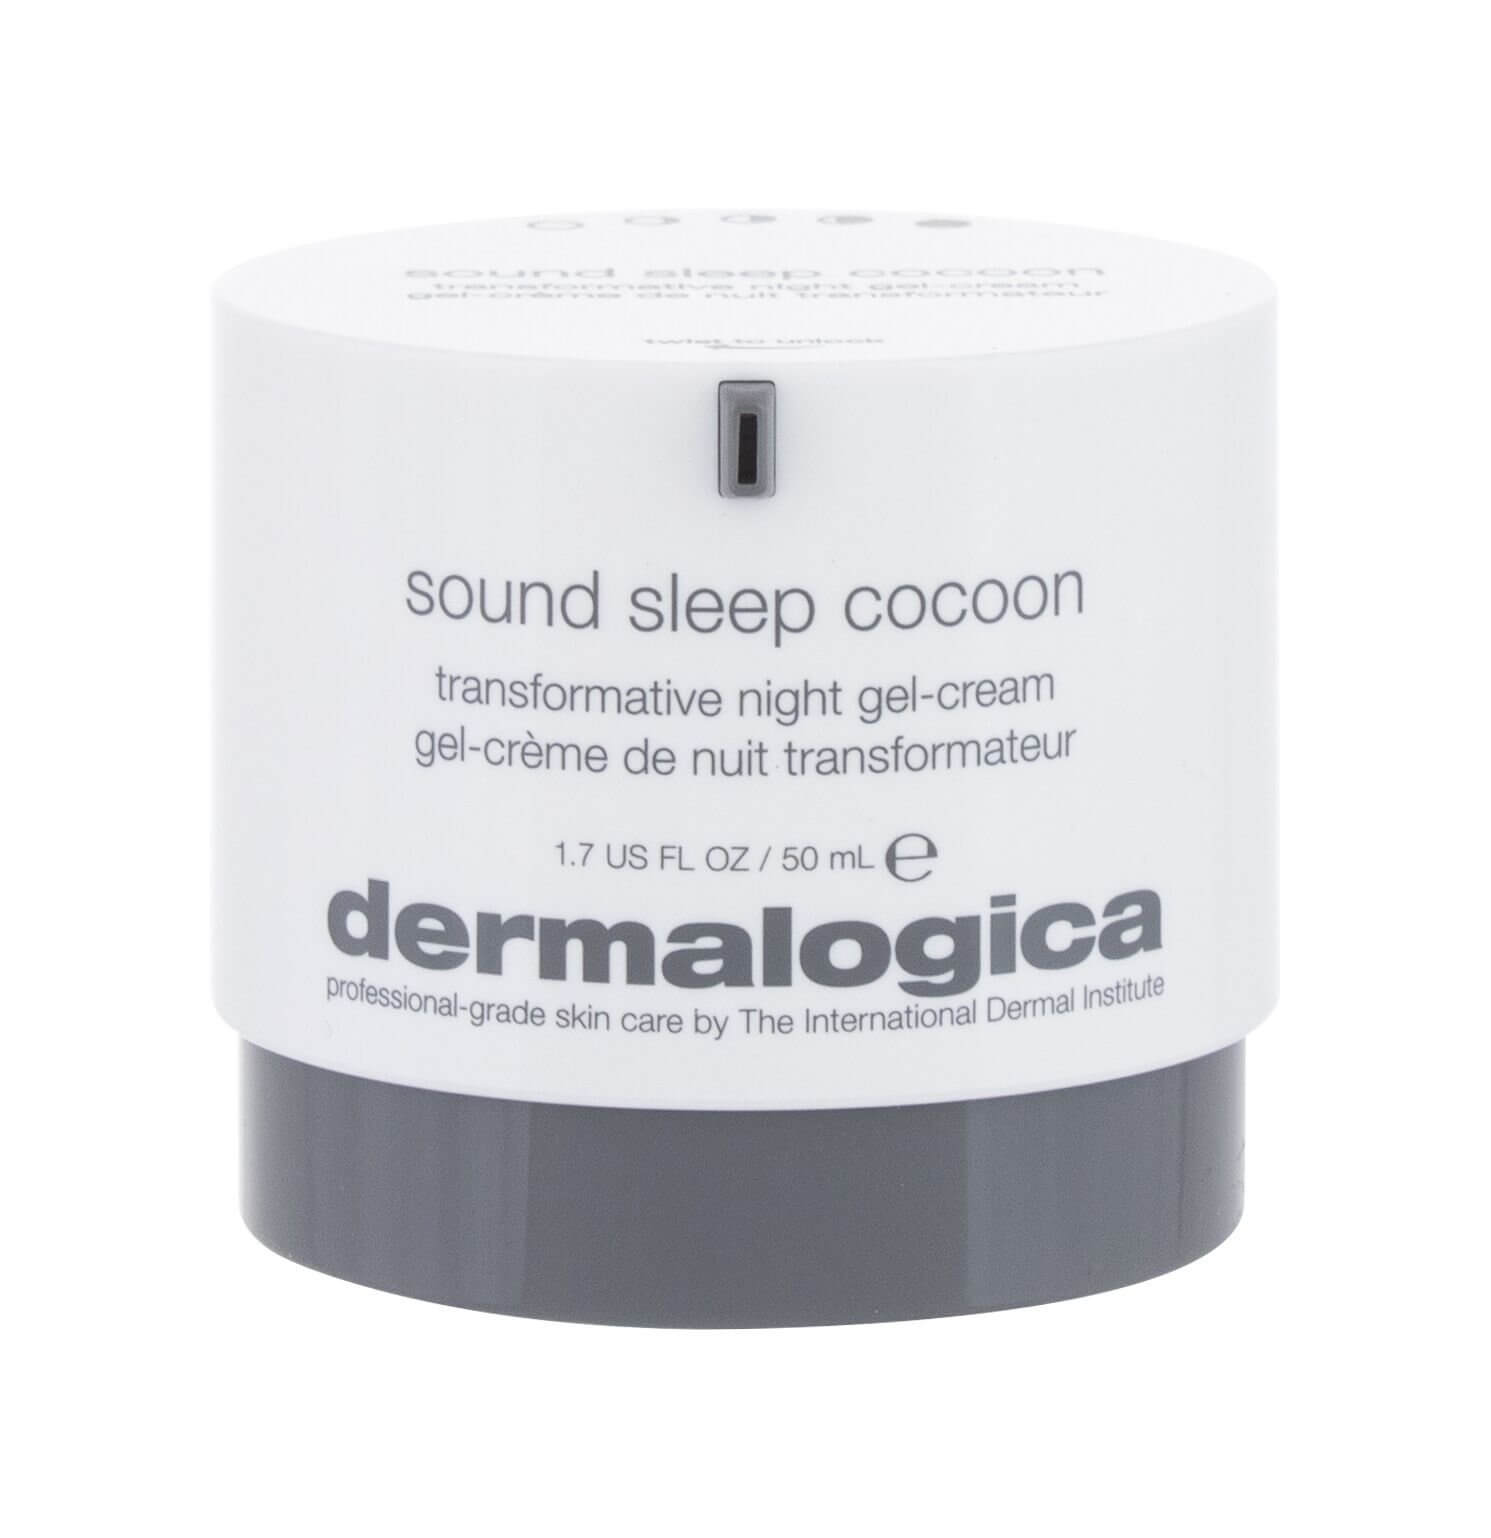 Dermalogica nočný revitalizačný gélový krém sound sleep cocoon (transformative night gel-cream) 50 ml